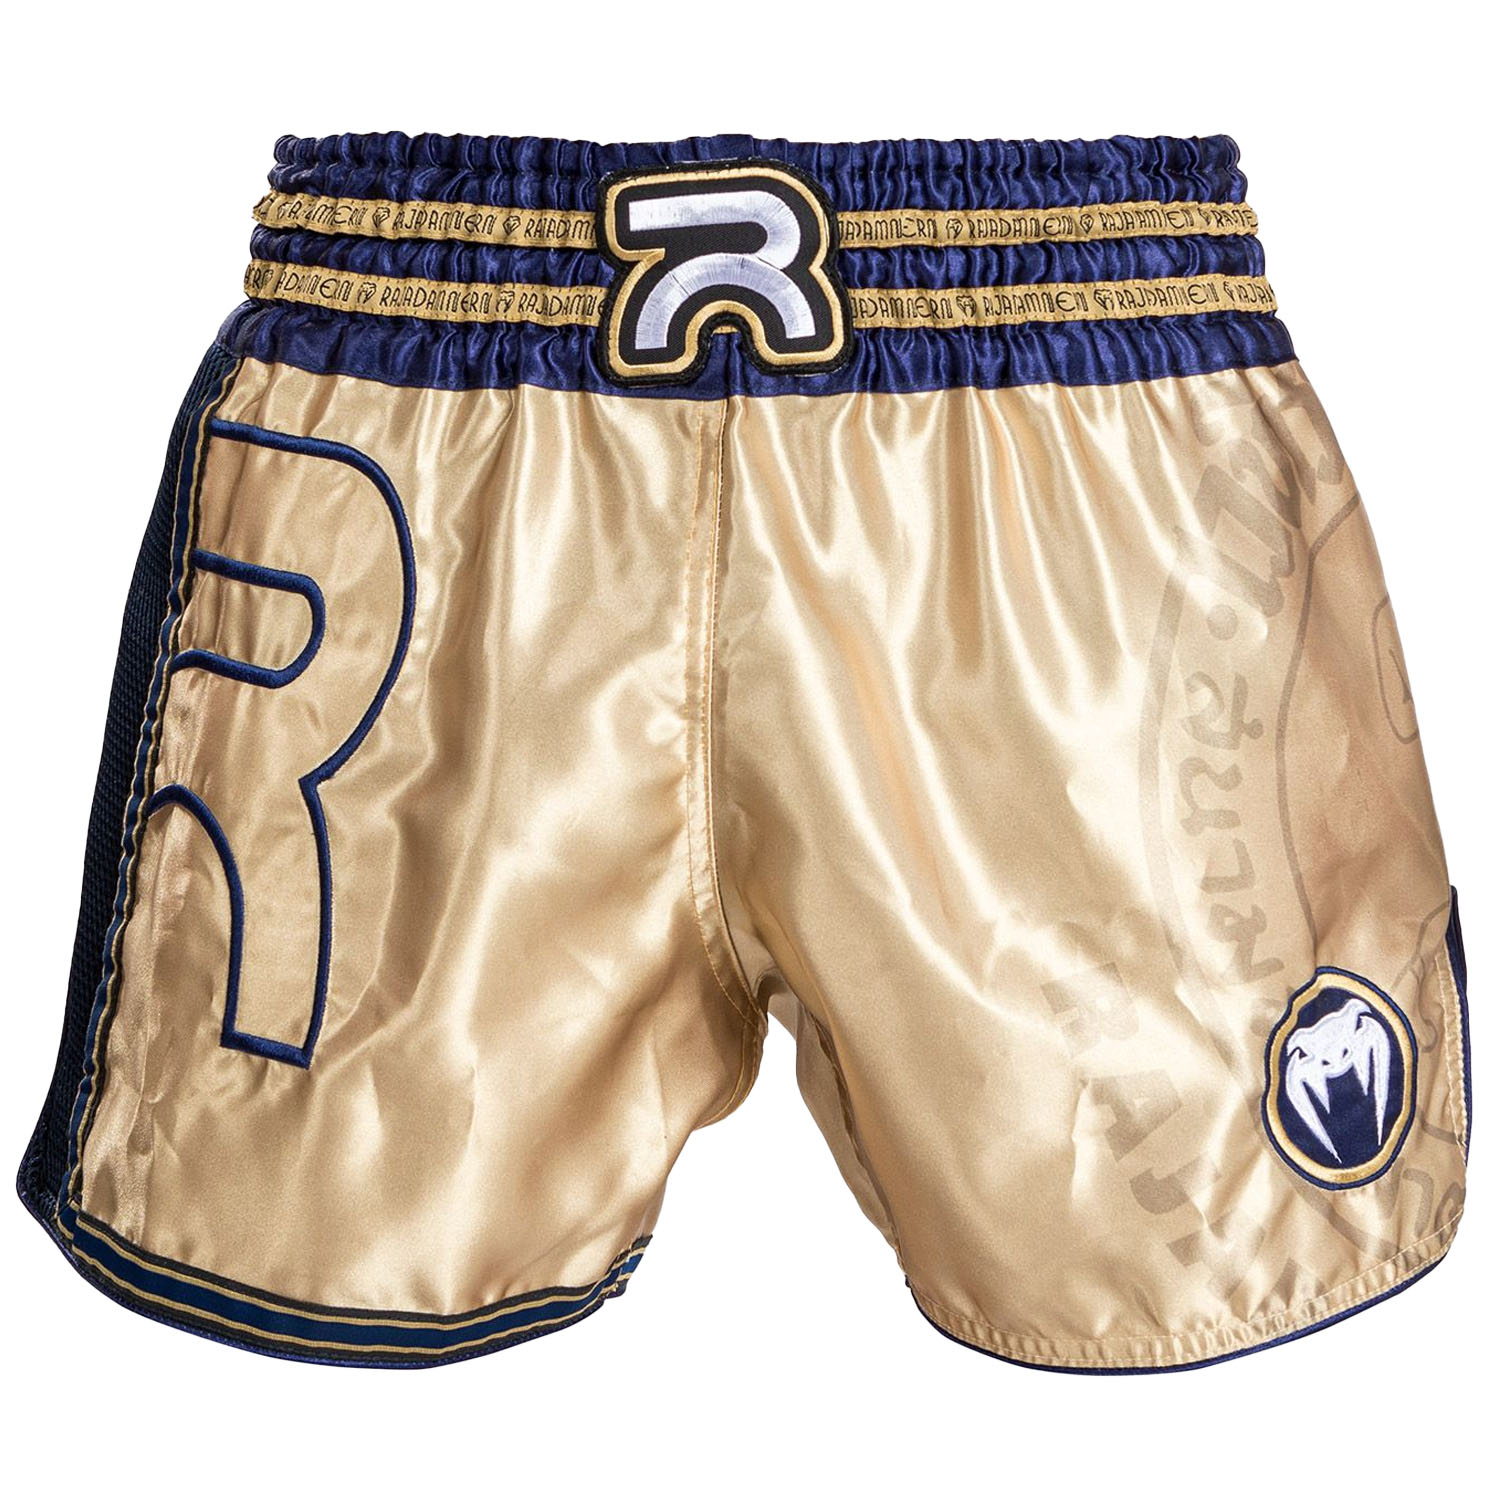 VENUM Muay Thai Shorts, Rajadamnern, gold-blue